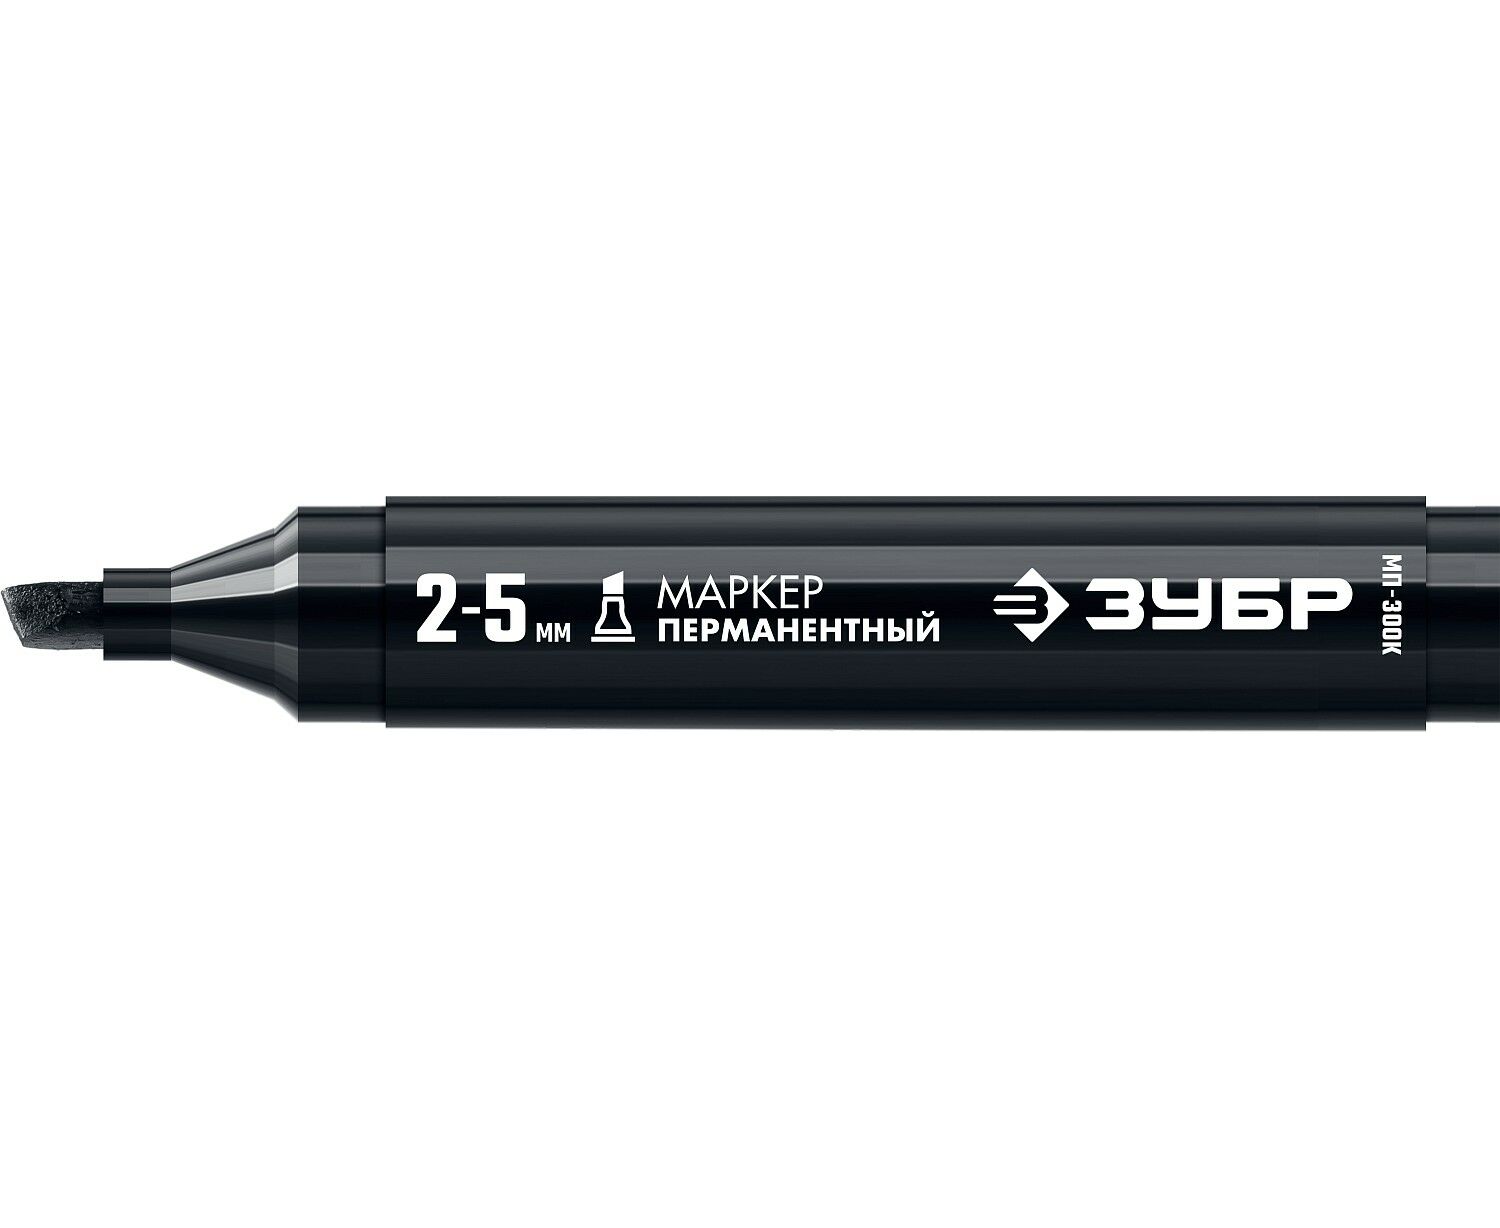 Маркер строительный ЗУБР МП-300К черный, 2-5 мм, клиновидный, перманентный